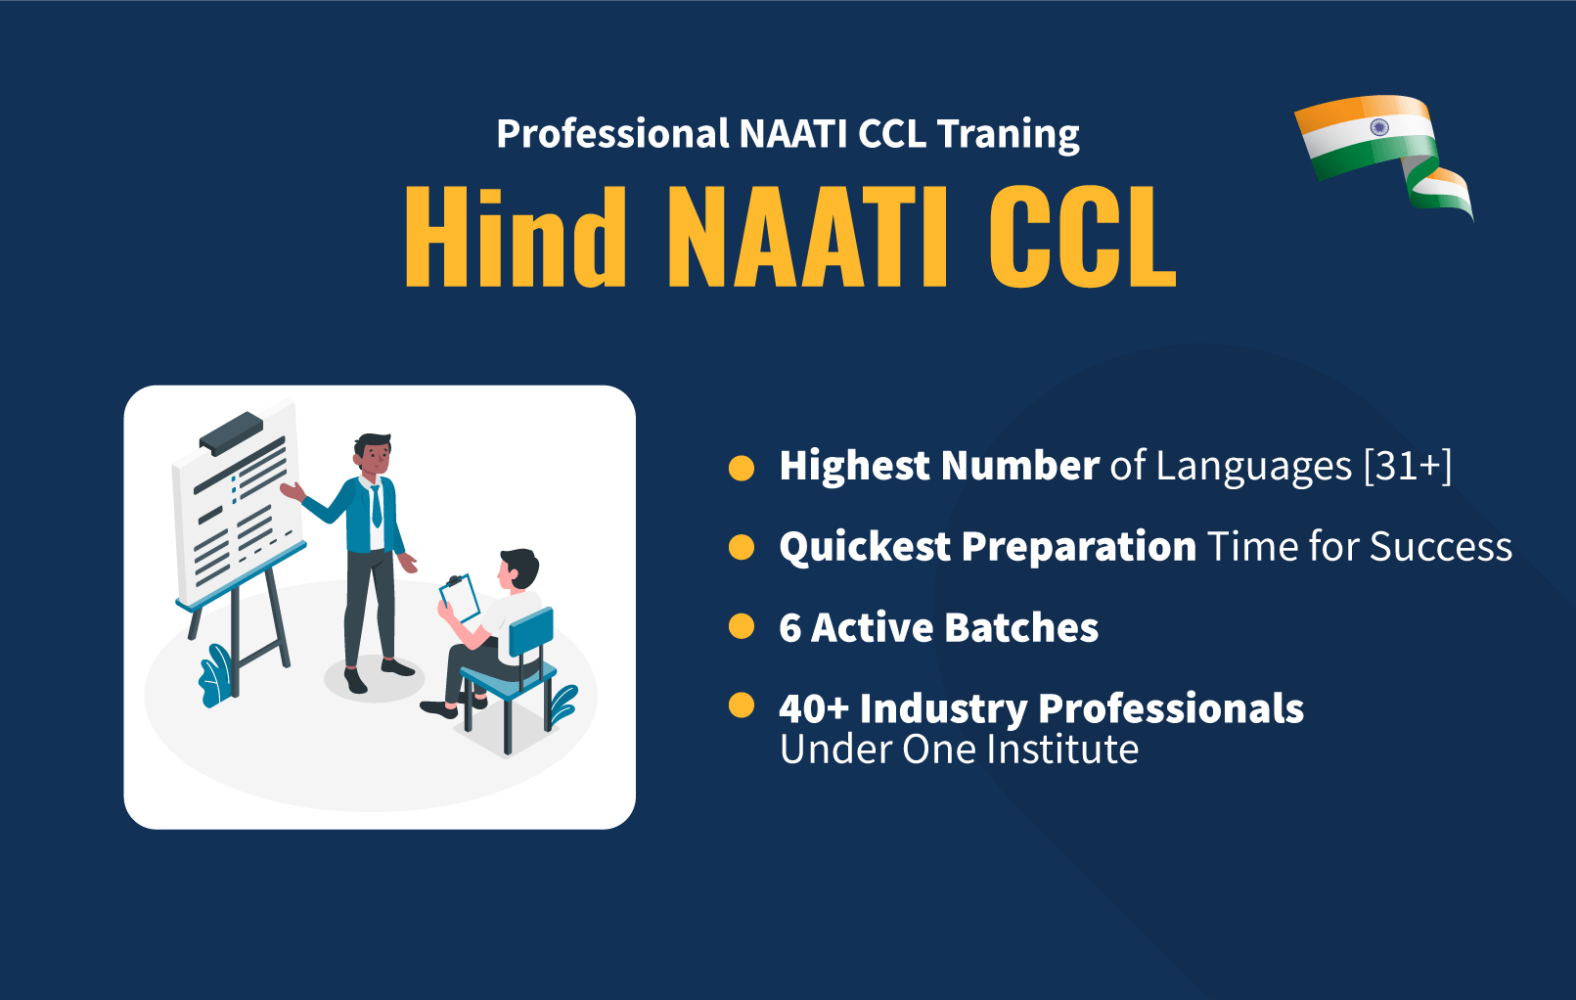 Hindi NAATI CCL image